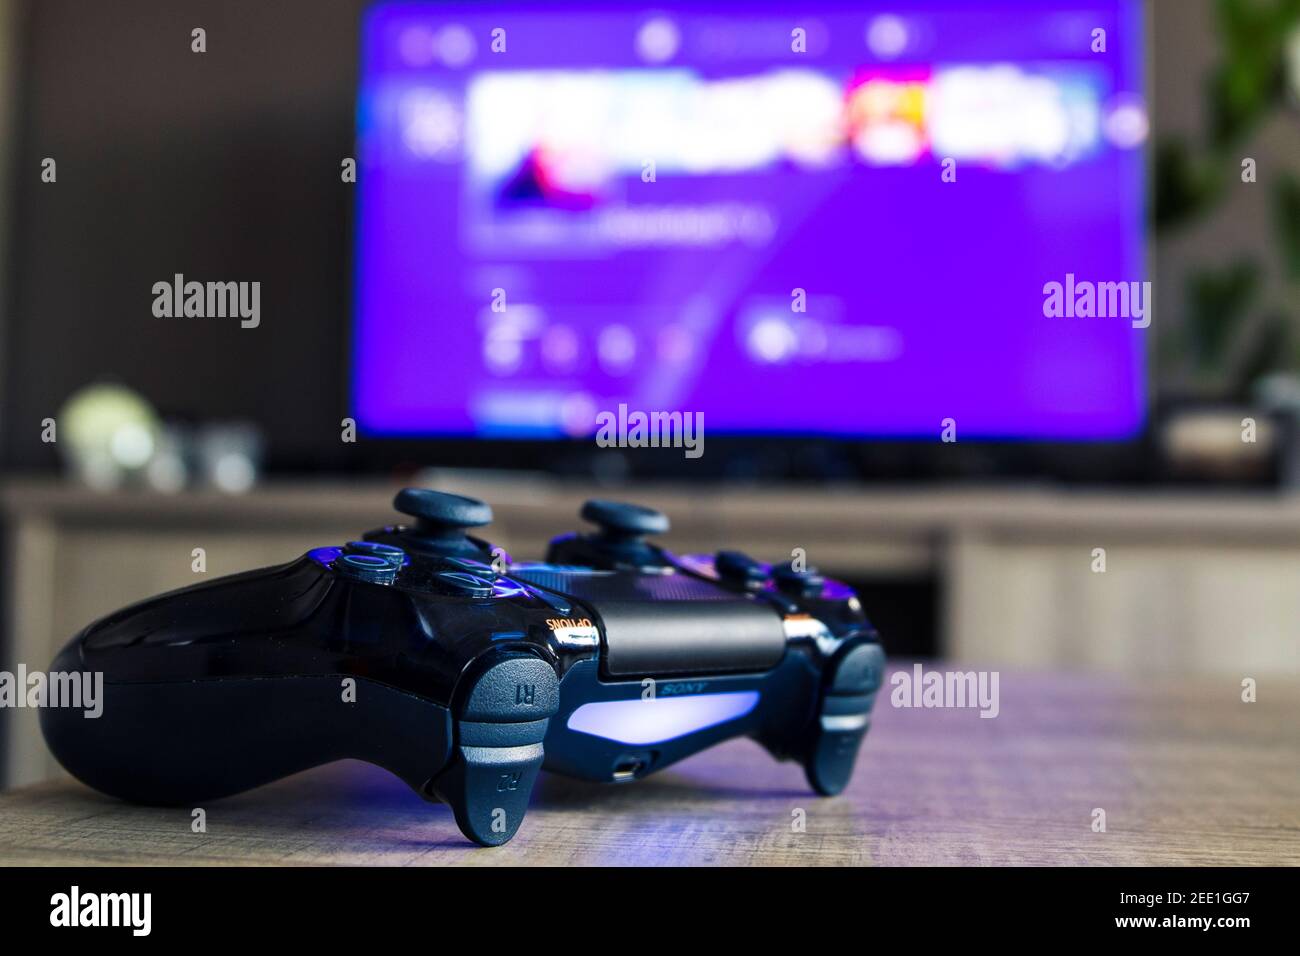 Un primer retrato de un dispositivo de videojuegos playstation 4 de sony  frente a un televisor con el menú de inicio de playstation. The PS4 cont  Fotografía de stock - Alamy